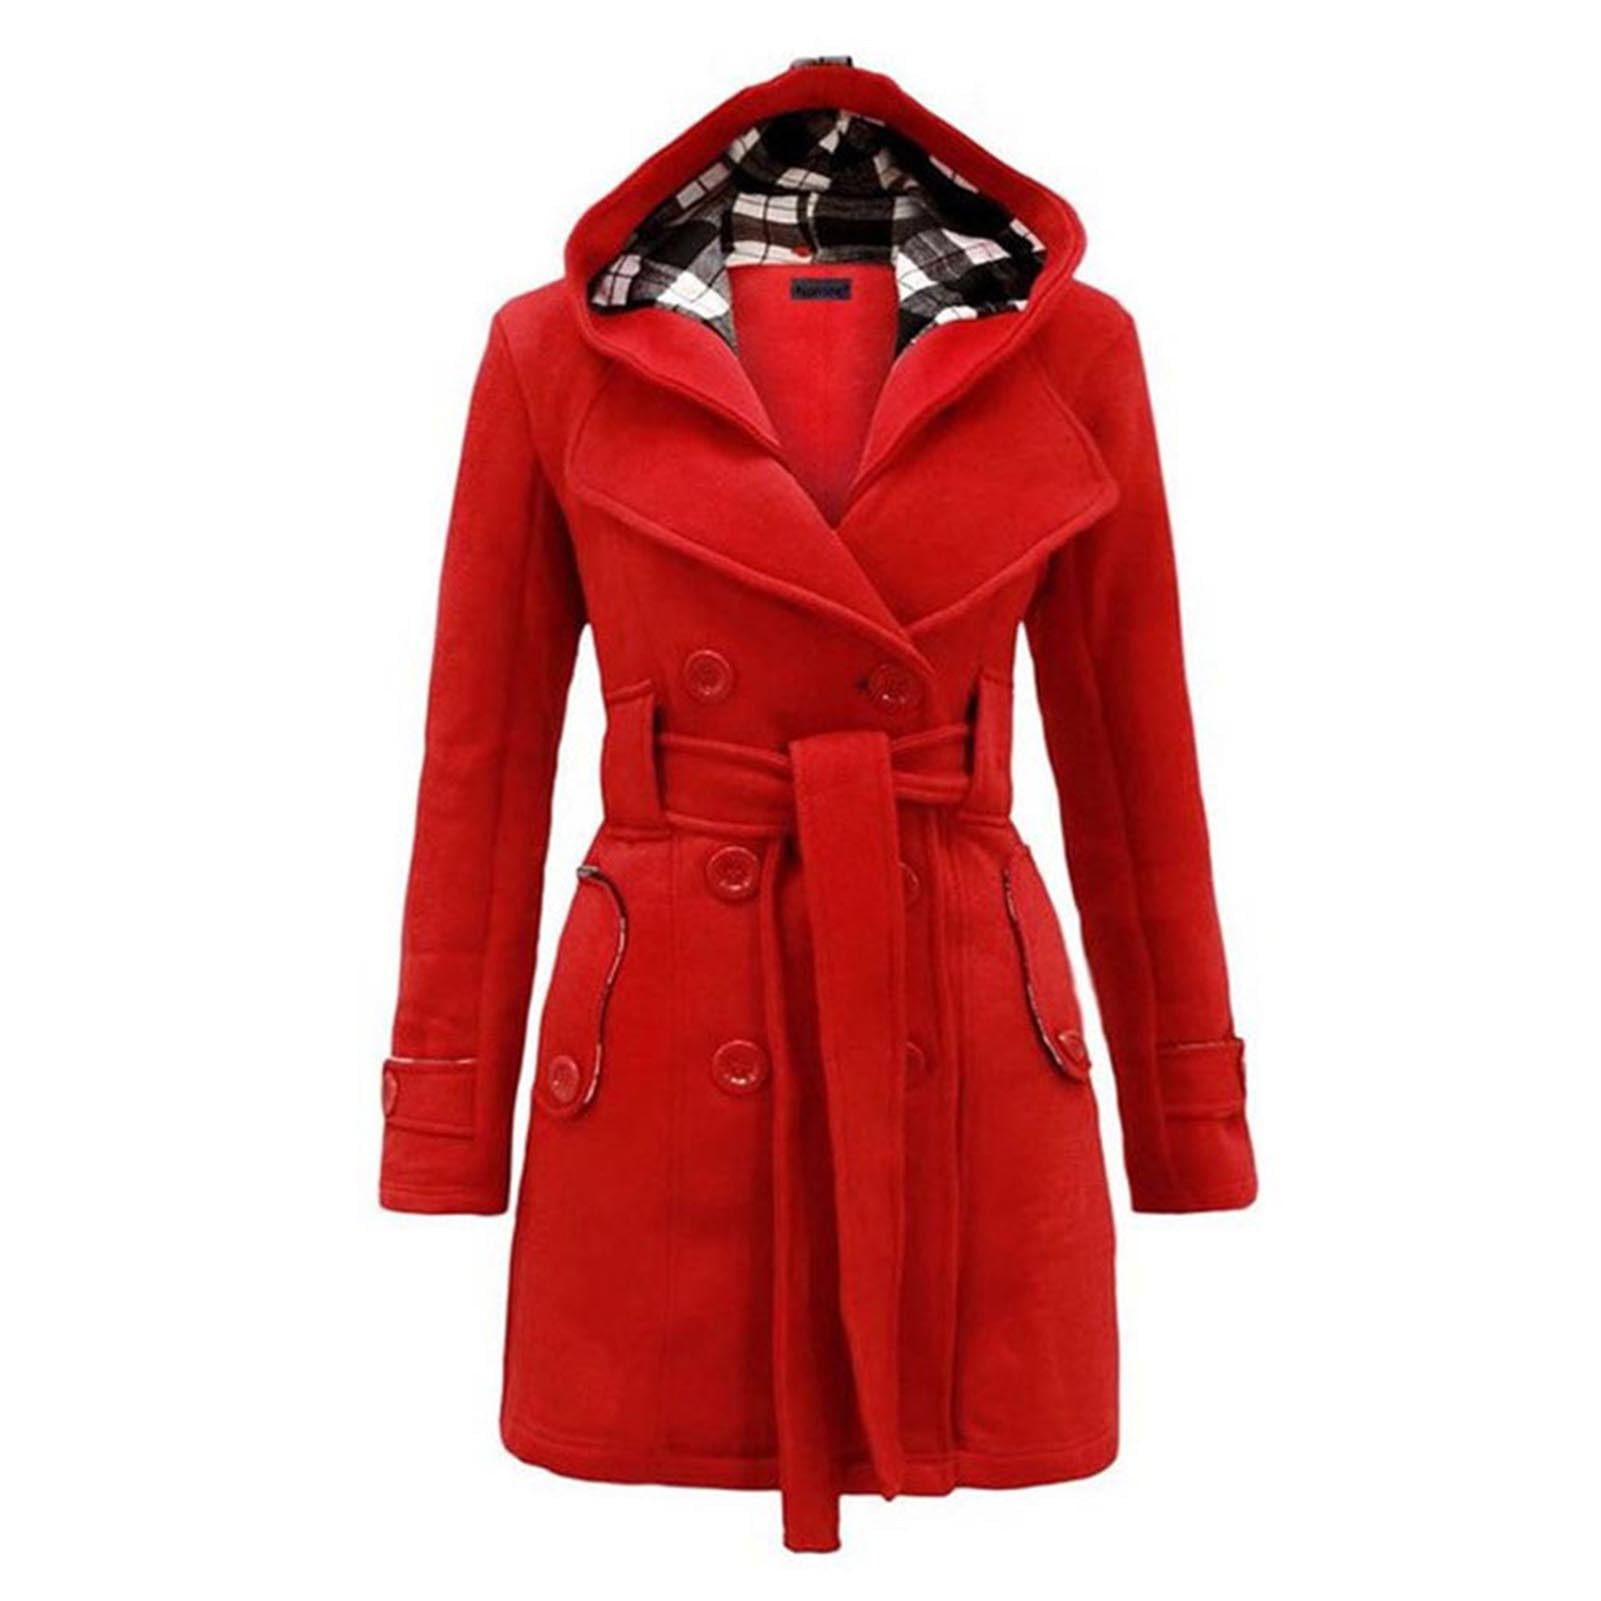 Capreze Winter Sherpa Fuzzy Fleece Long Coat Jacket for Womens